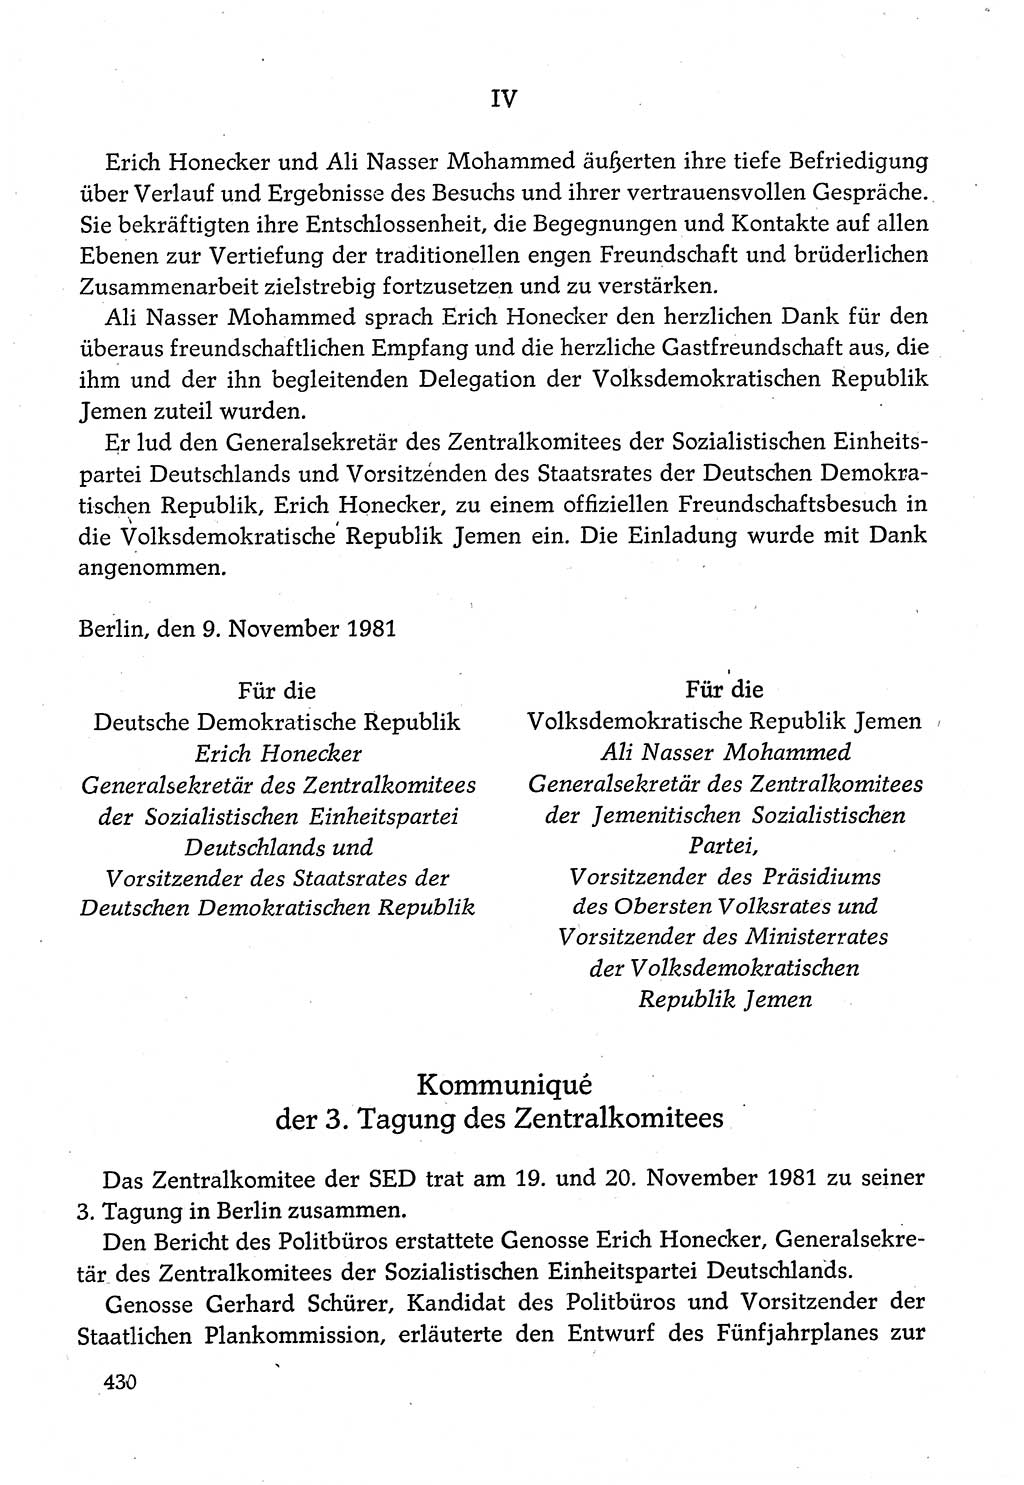 Dokumente der Sozialistischen Einheitspartei Deutschlands (SED) [Deutsche Demokratische Republik (DDR)] 1980-1981, Seite 430 (Dok. SED DDR 1980-1981, S. 430)